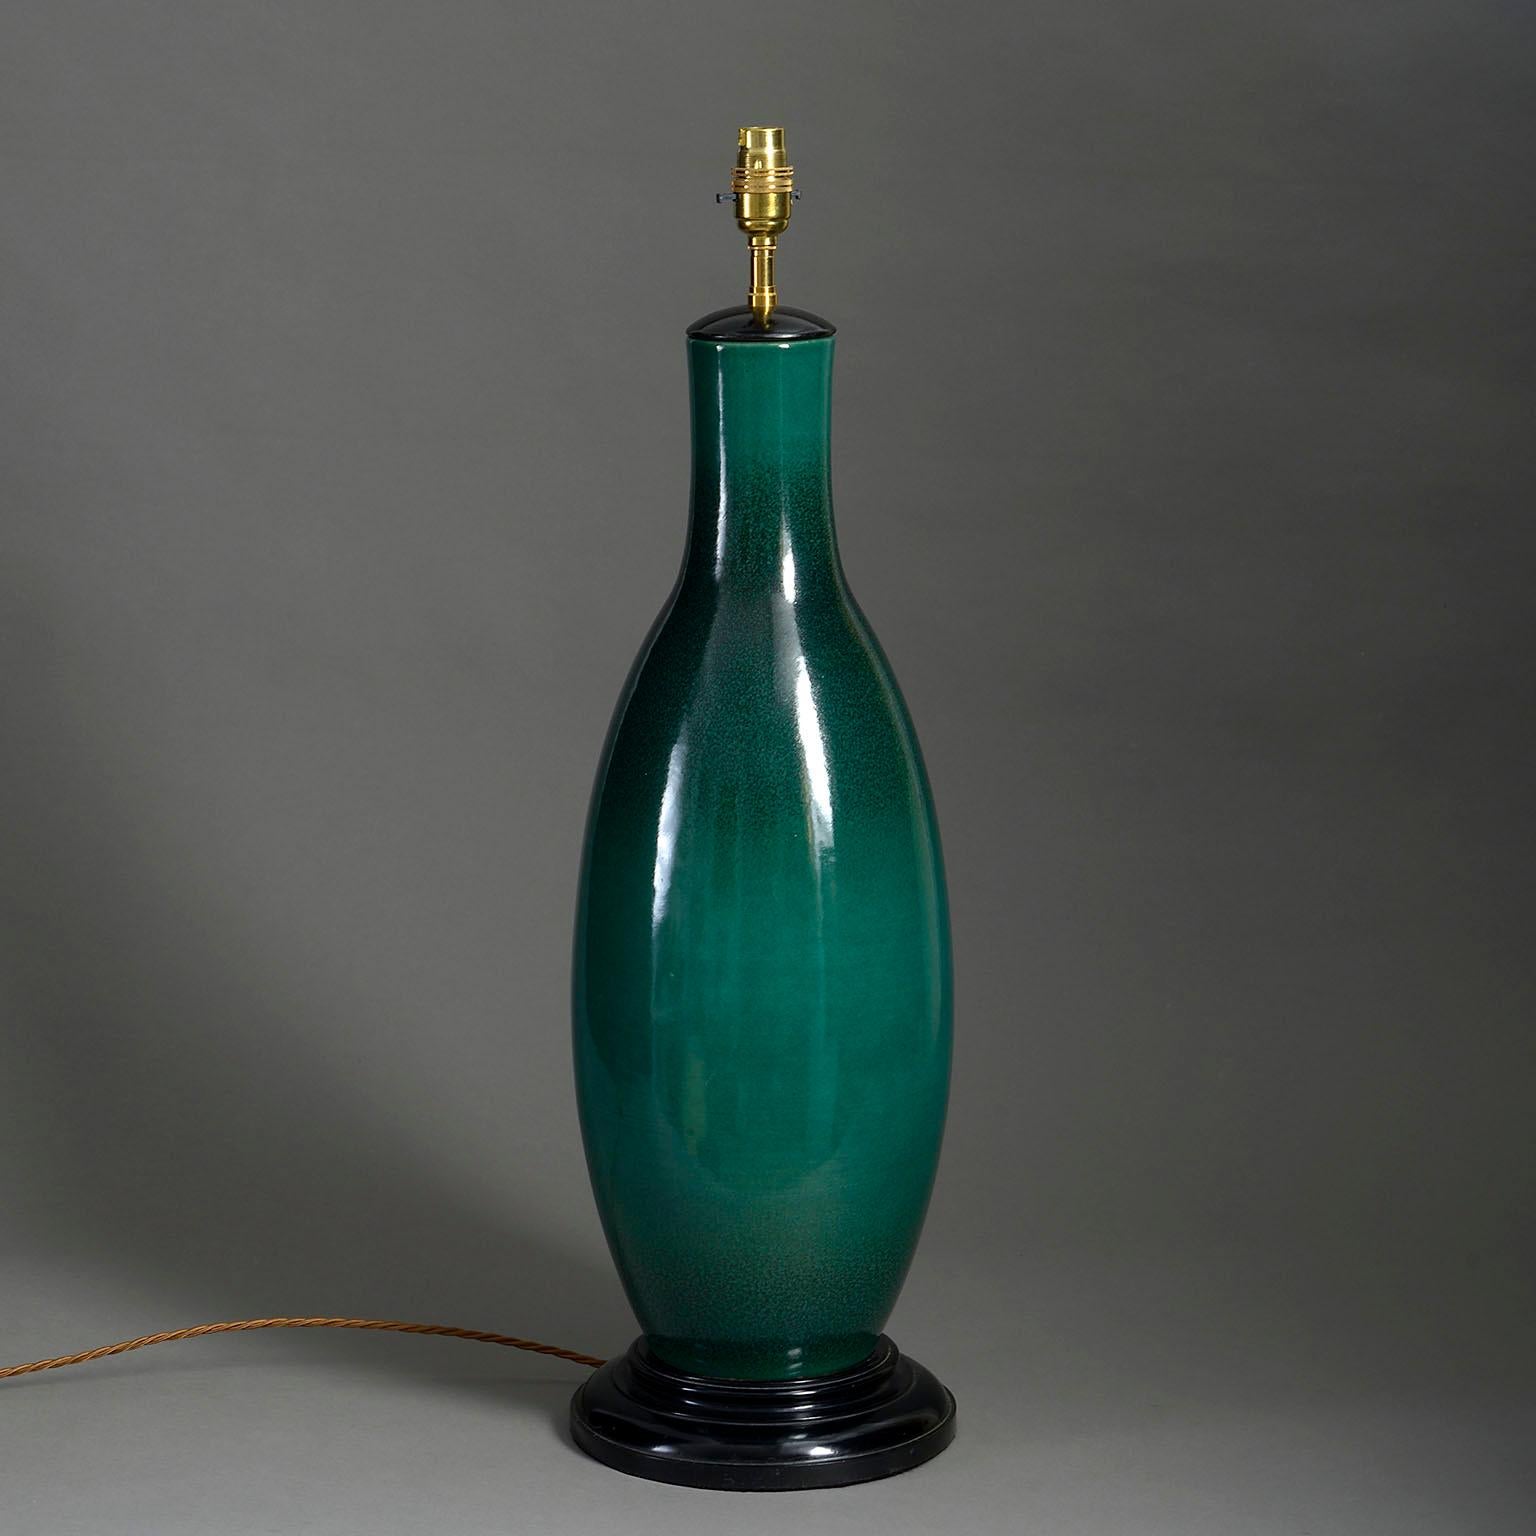 Eine hohe, tiefgrün glasierte Vase aus der Mitte des 20. Jahrhunderts in Form einer länglichen Flasche, montiert auf einem gedrechselten ebonisierten Sockel als Tischlampe.

Die Abmessungen beziehen sich nur auf die Vase und den ebonisierten